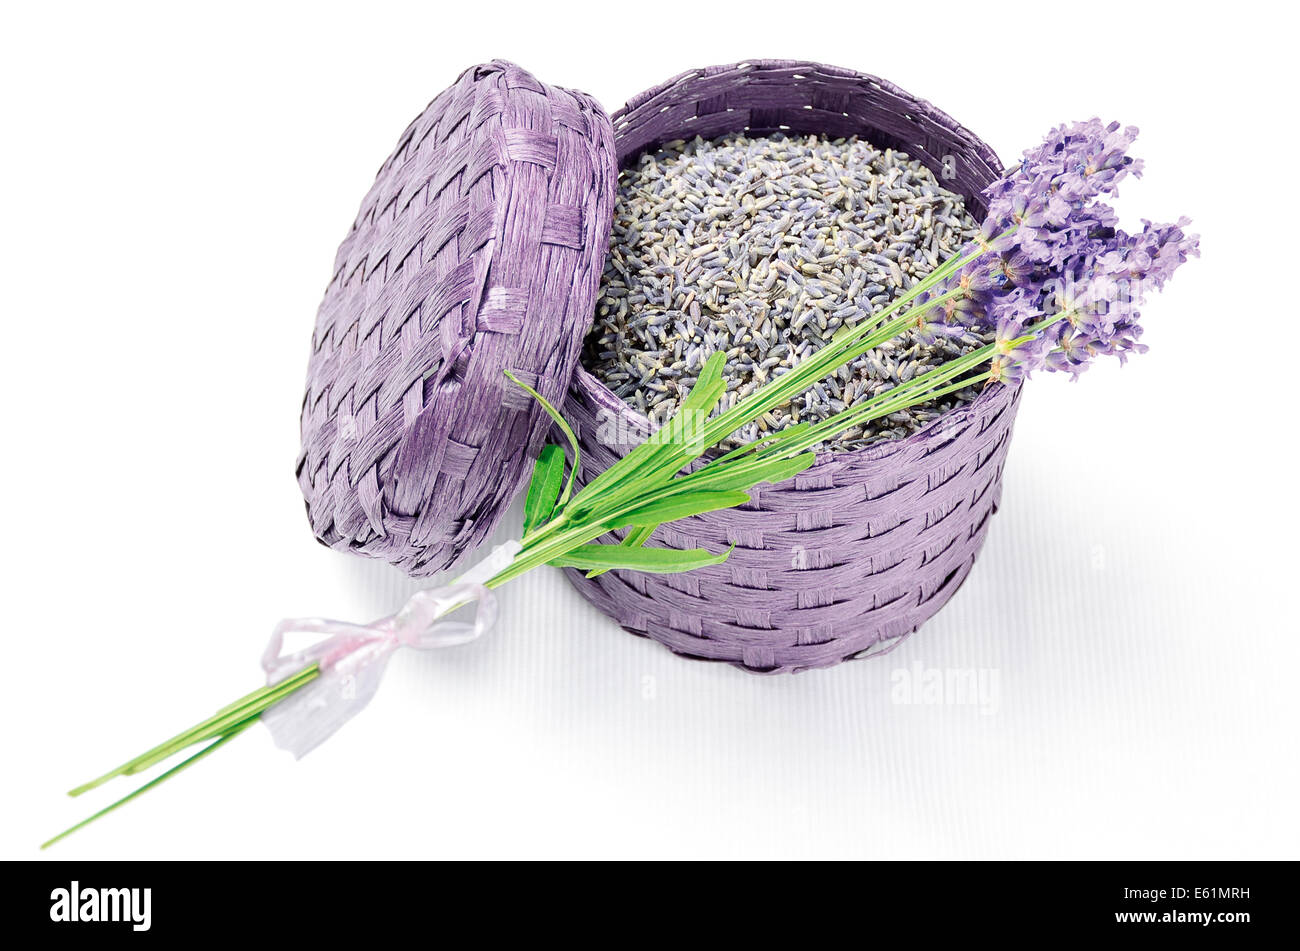 Cuadro de Lavanda - flores de lavanda secas o frescas en un purple bast cesta. Foto de stock